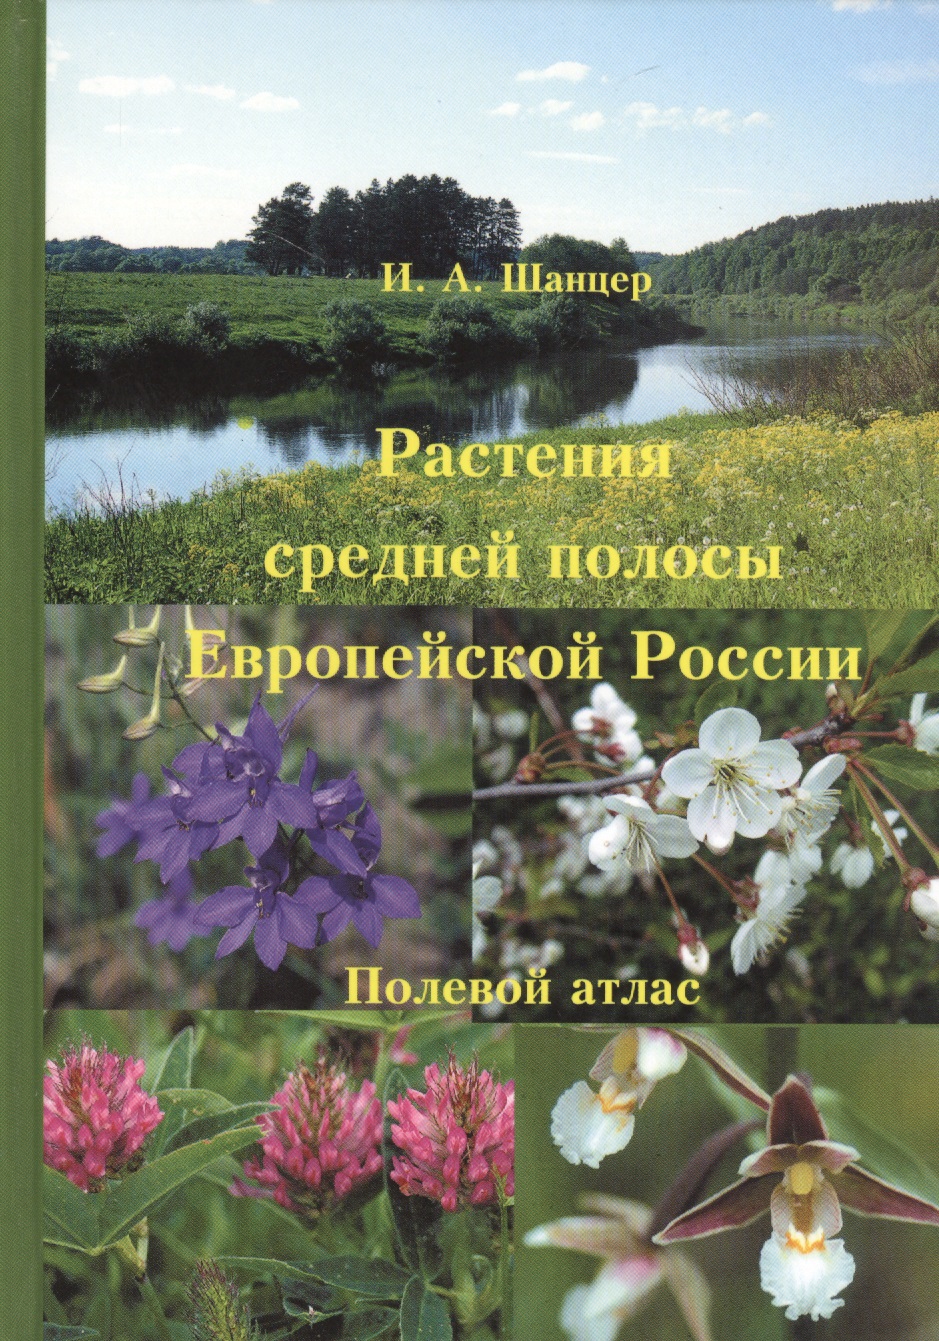 Растения средней полосы Европейской России. Полевой атлас. 5-е изд.